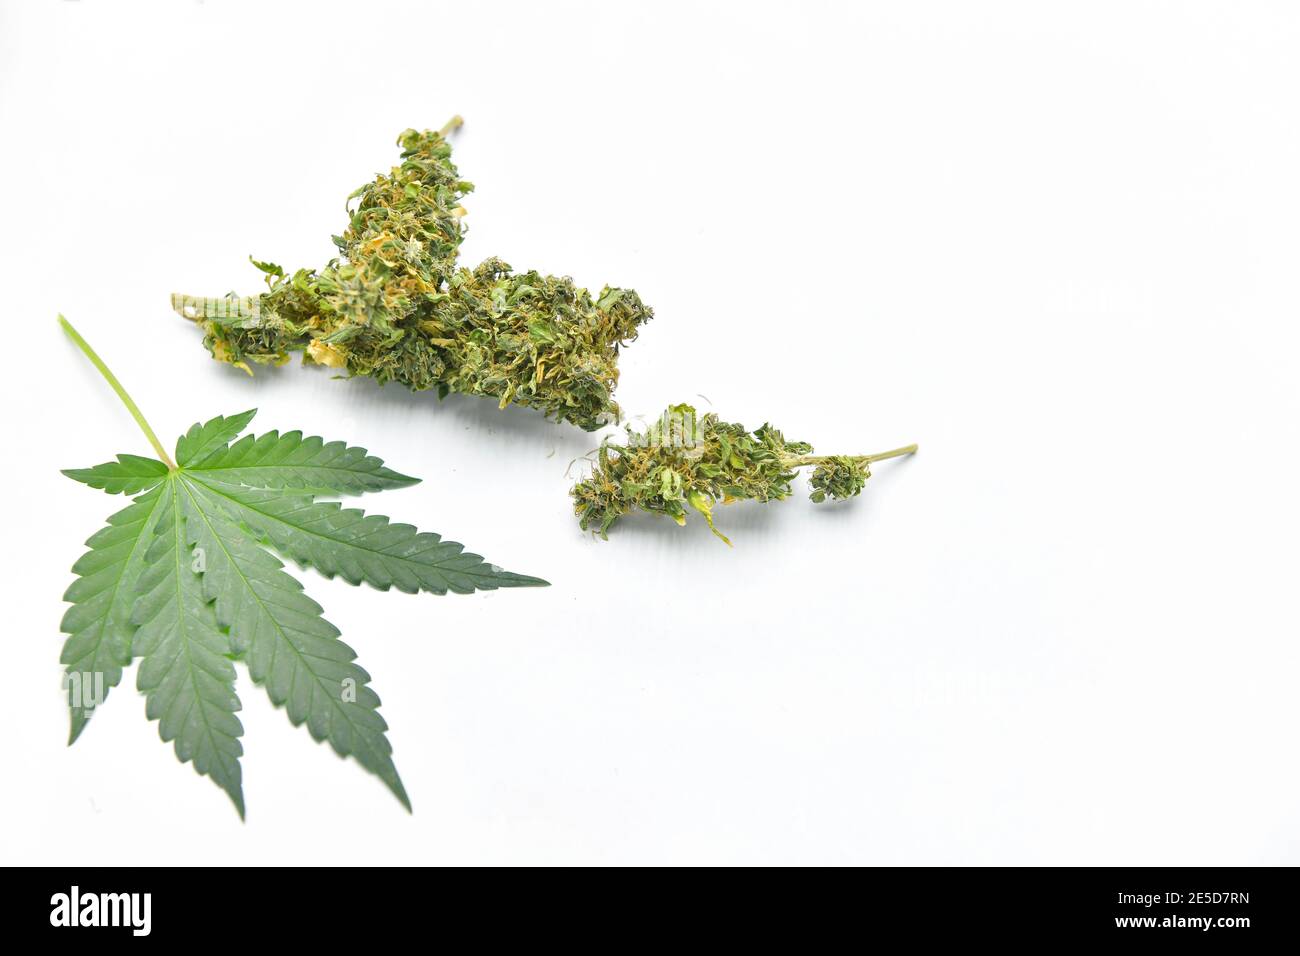 https://c8.alamy.com/comp/2E5D7RN/close-up-of-a-cannabis-leaf-and-marijuana-2E5D7RN.jpg